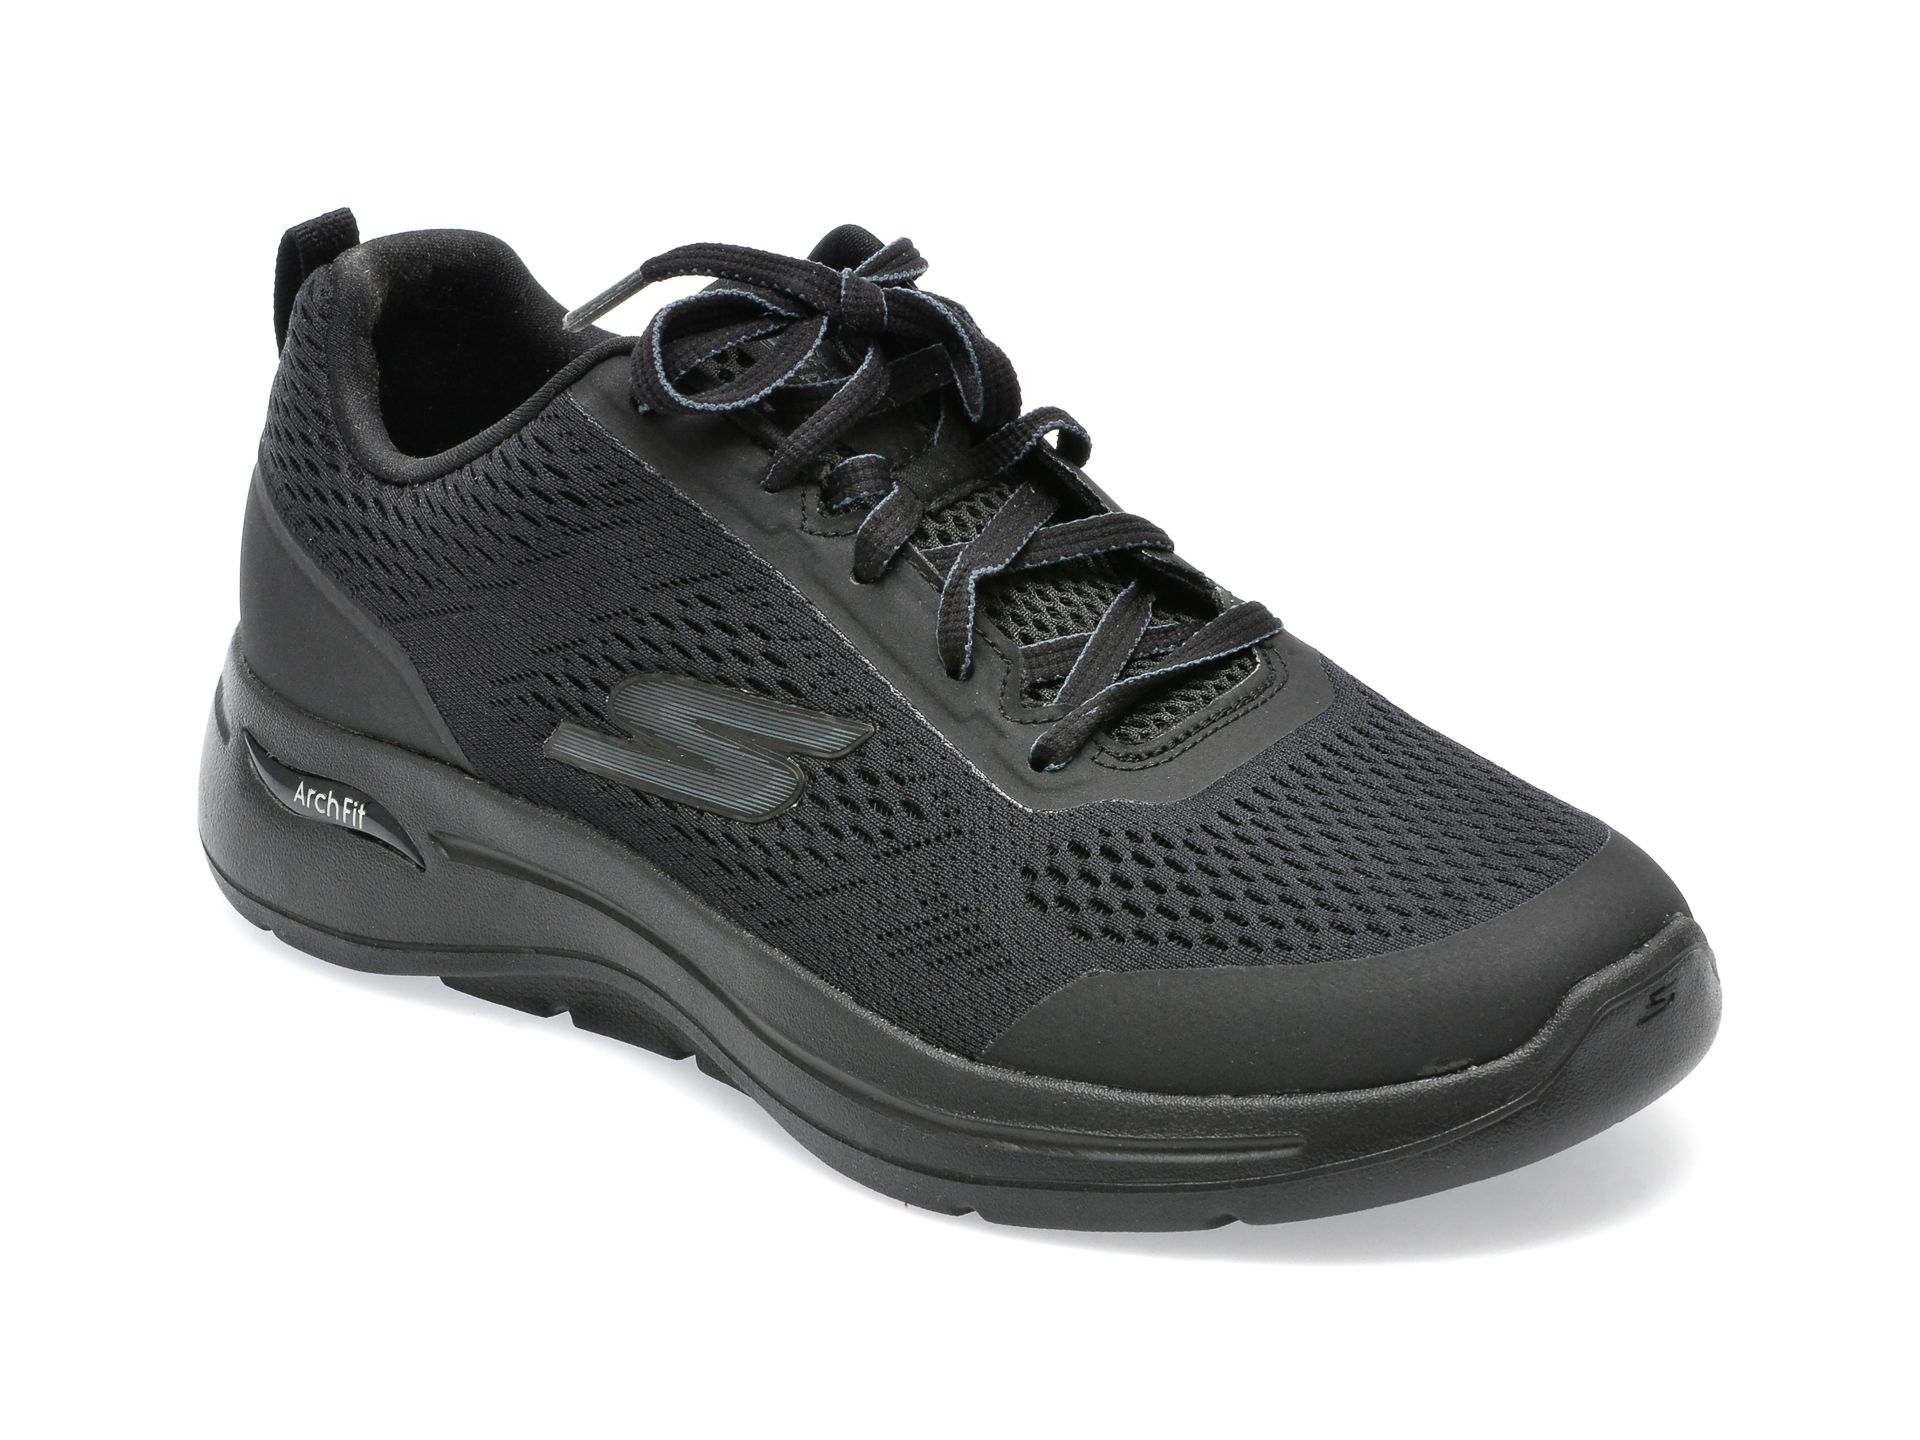 Pantofi sport SKECHERS negri, GO WALK ARCH FIT9, din material textil /barbati/pantofi /barbati/pantofi